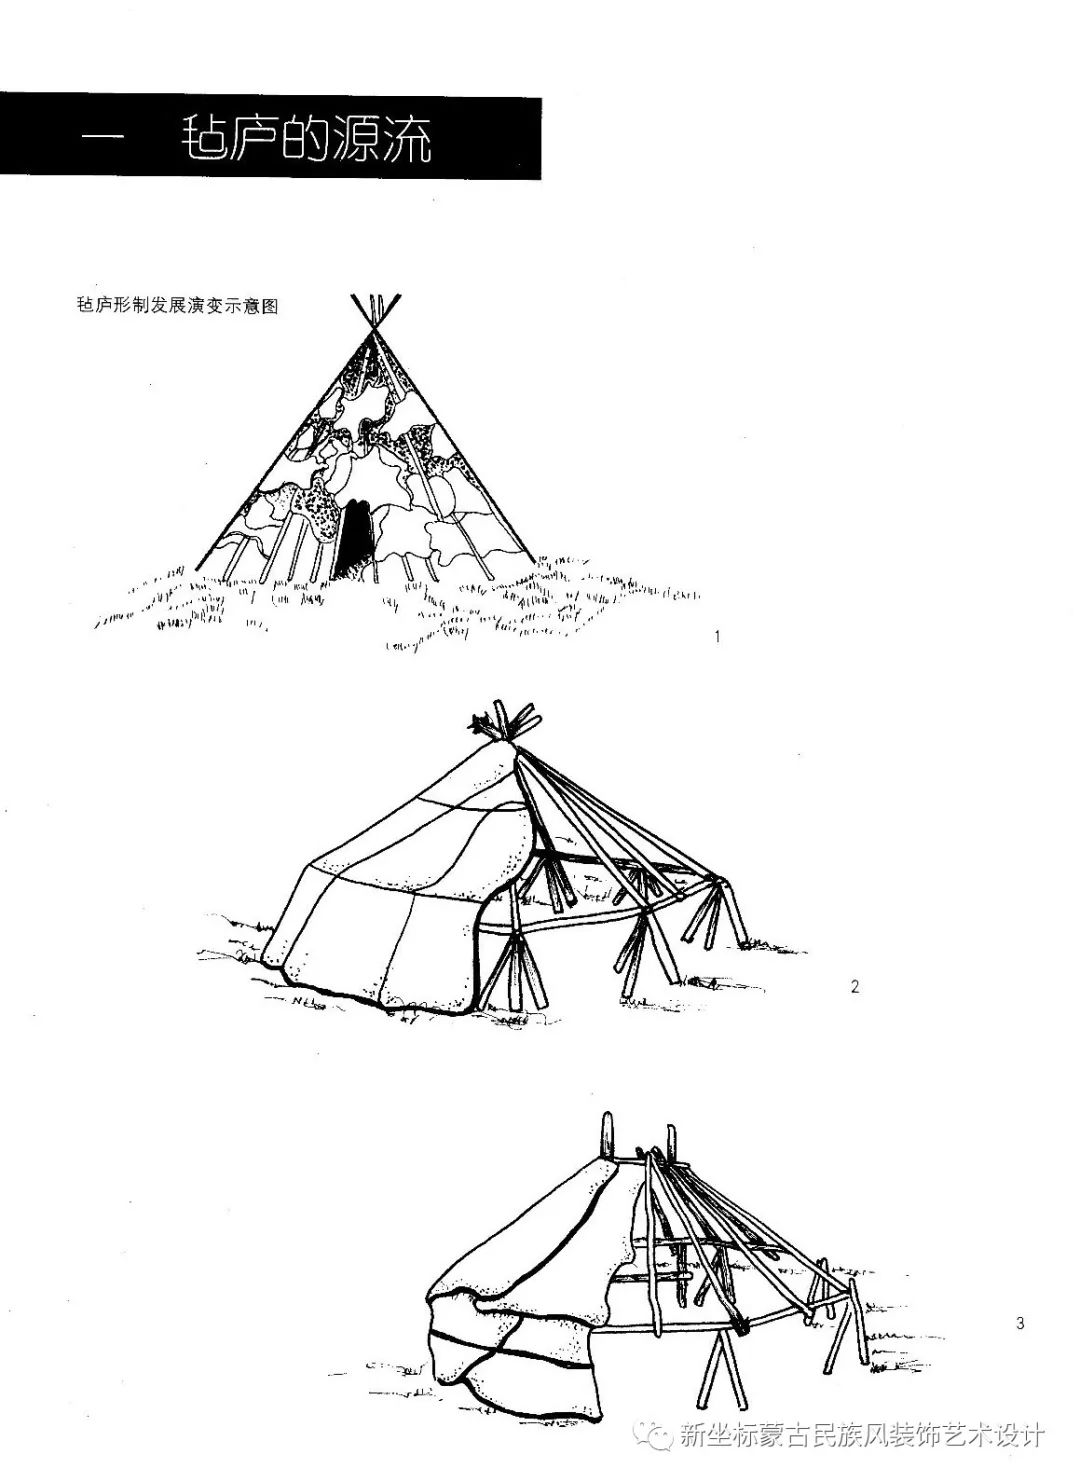 蒙古包的溯源